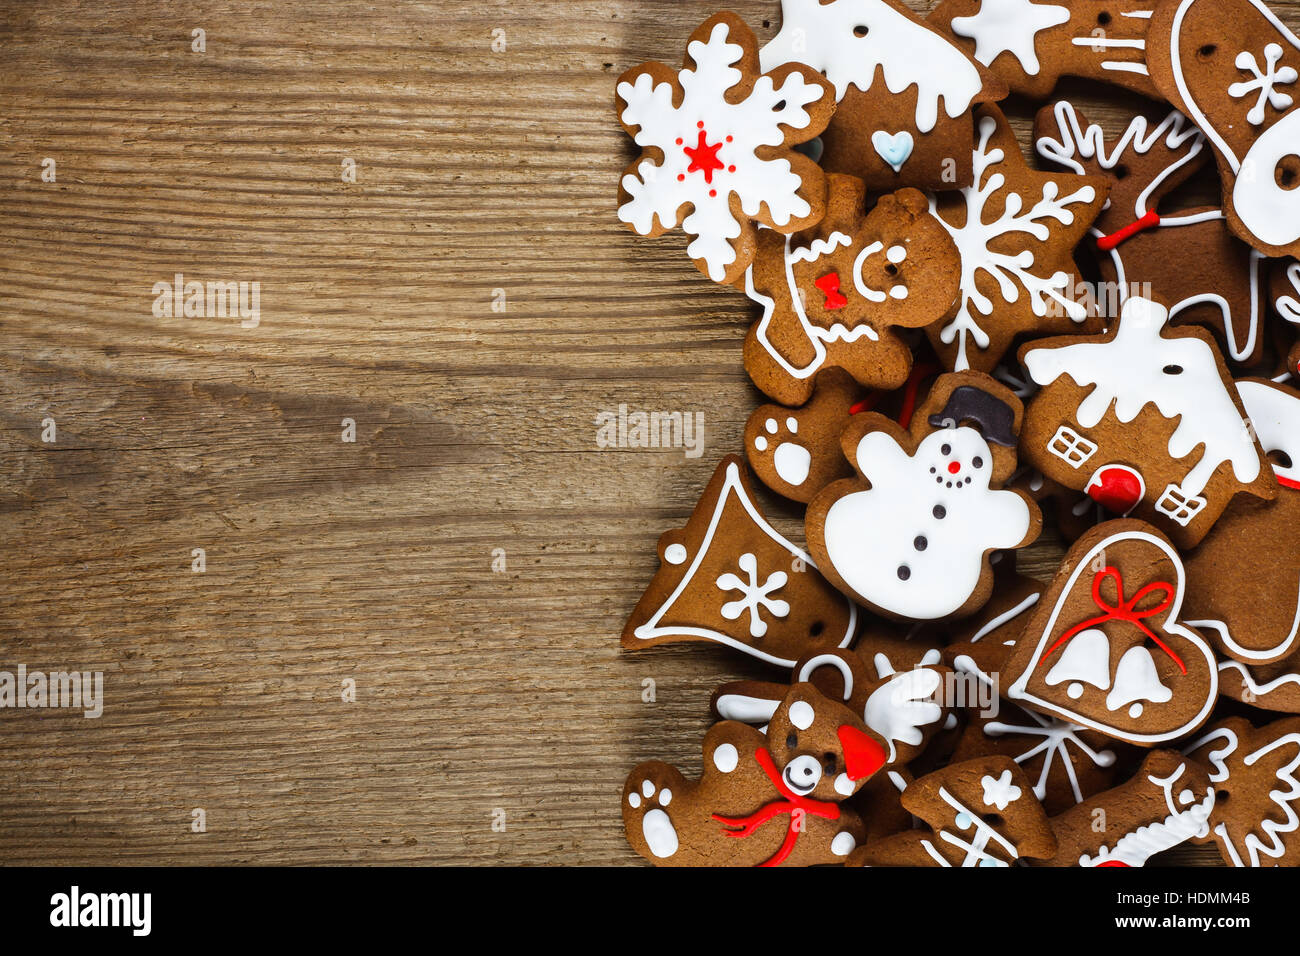 Hausgemachte Weihnachtskekse - Lebkuchen Stockfoto